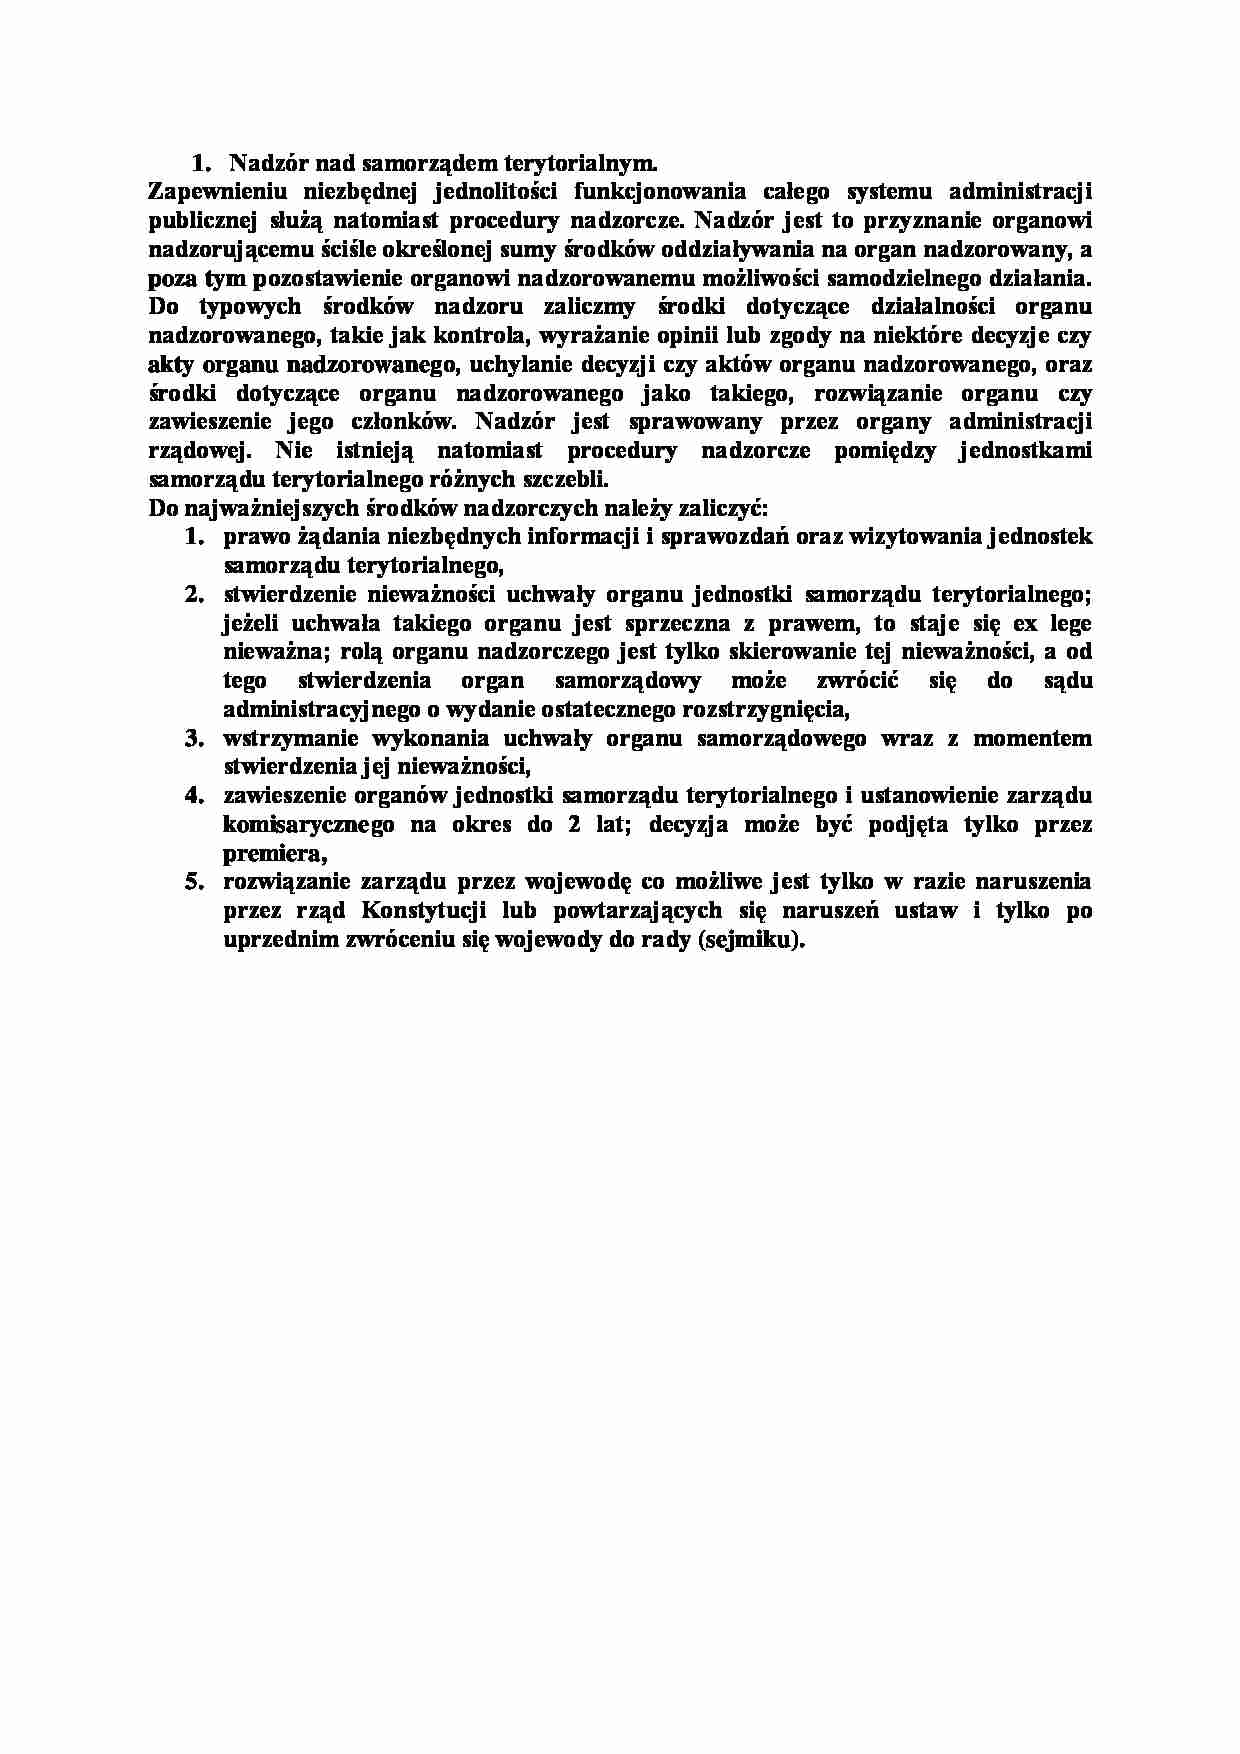 Nadzór nad samorządem terytorialnym-opracowanie - System administracji - strona 1